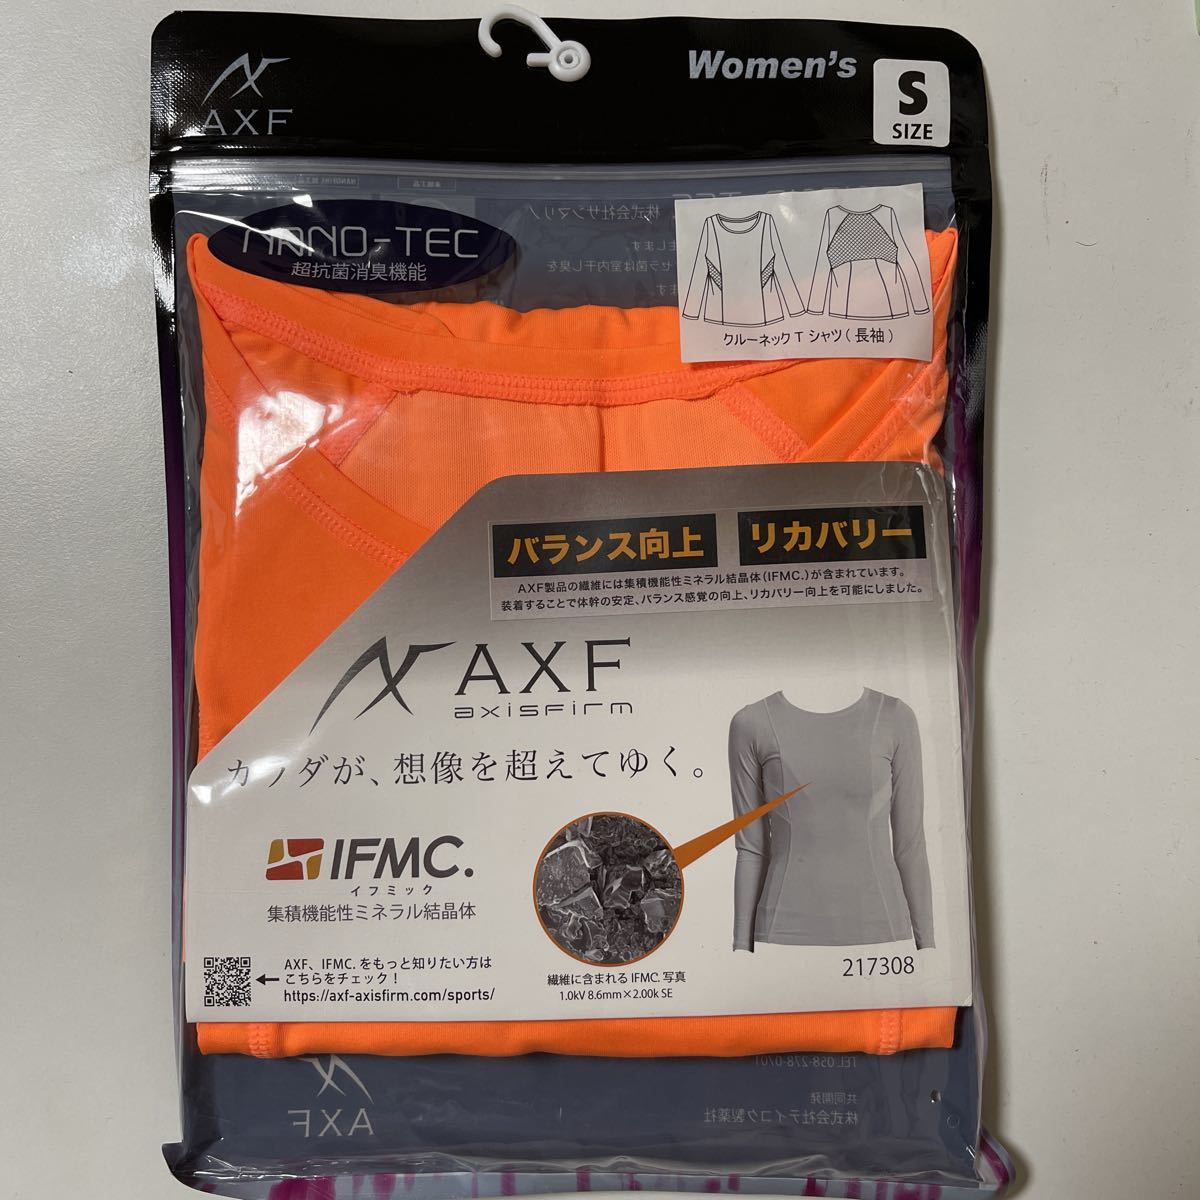 AXF axisfirm женский вырез лодочкой футболка длинный рукав размер S orange 